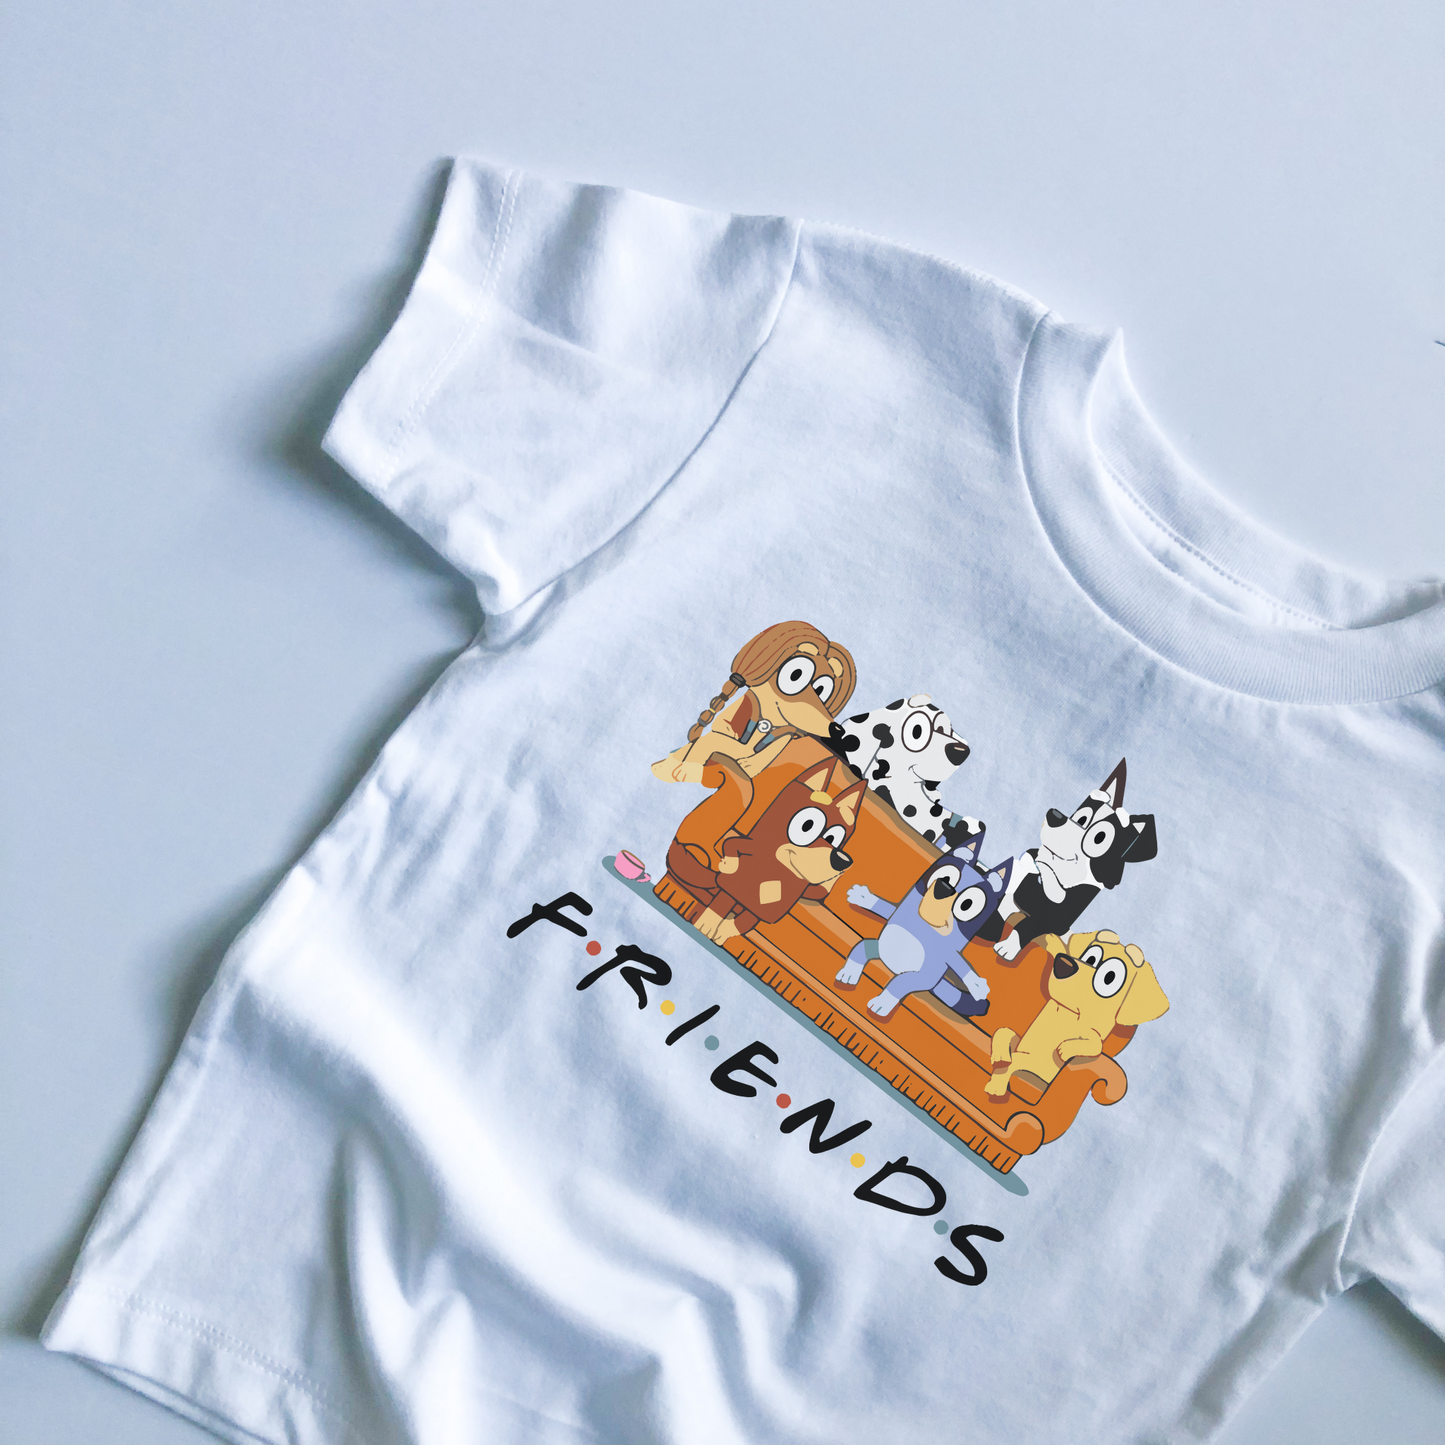 F.R.I.E.N.D.S. + Bluey Infant & Toddler Tee